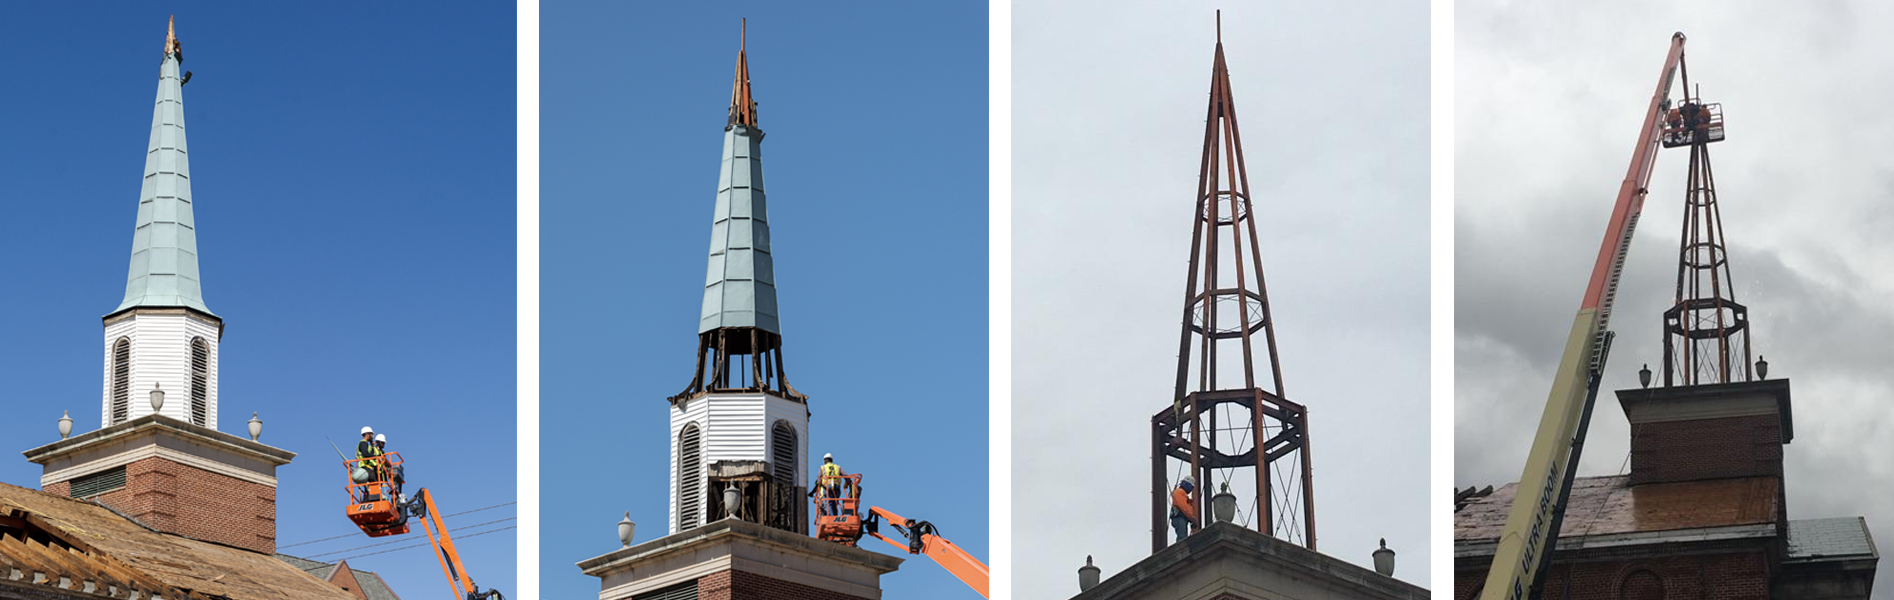 steeple removal progress